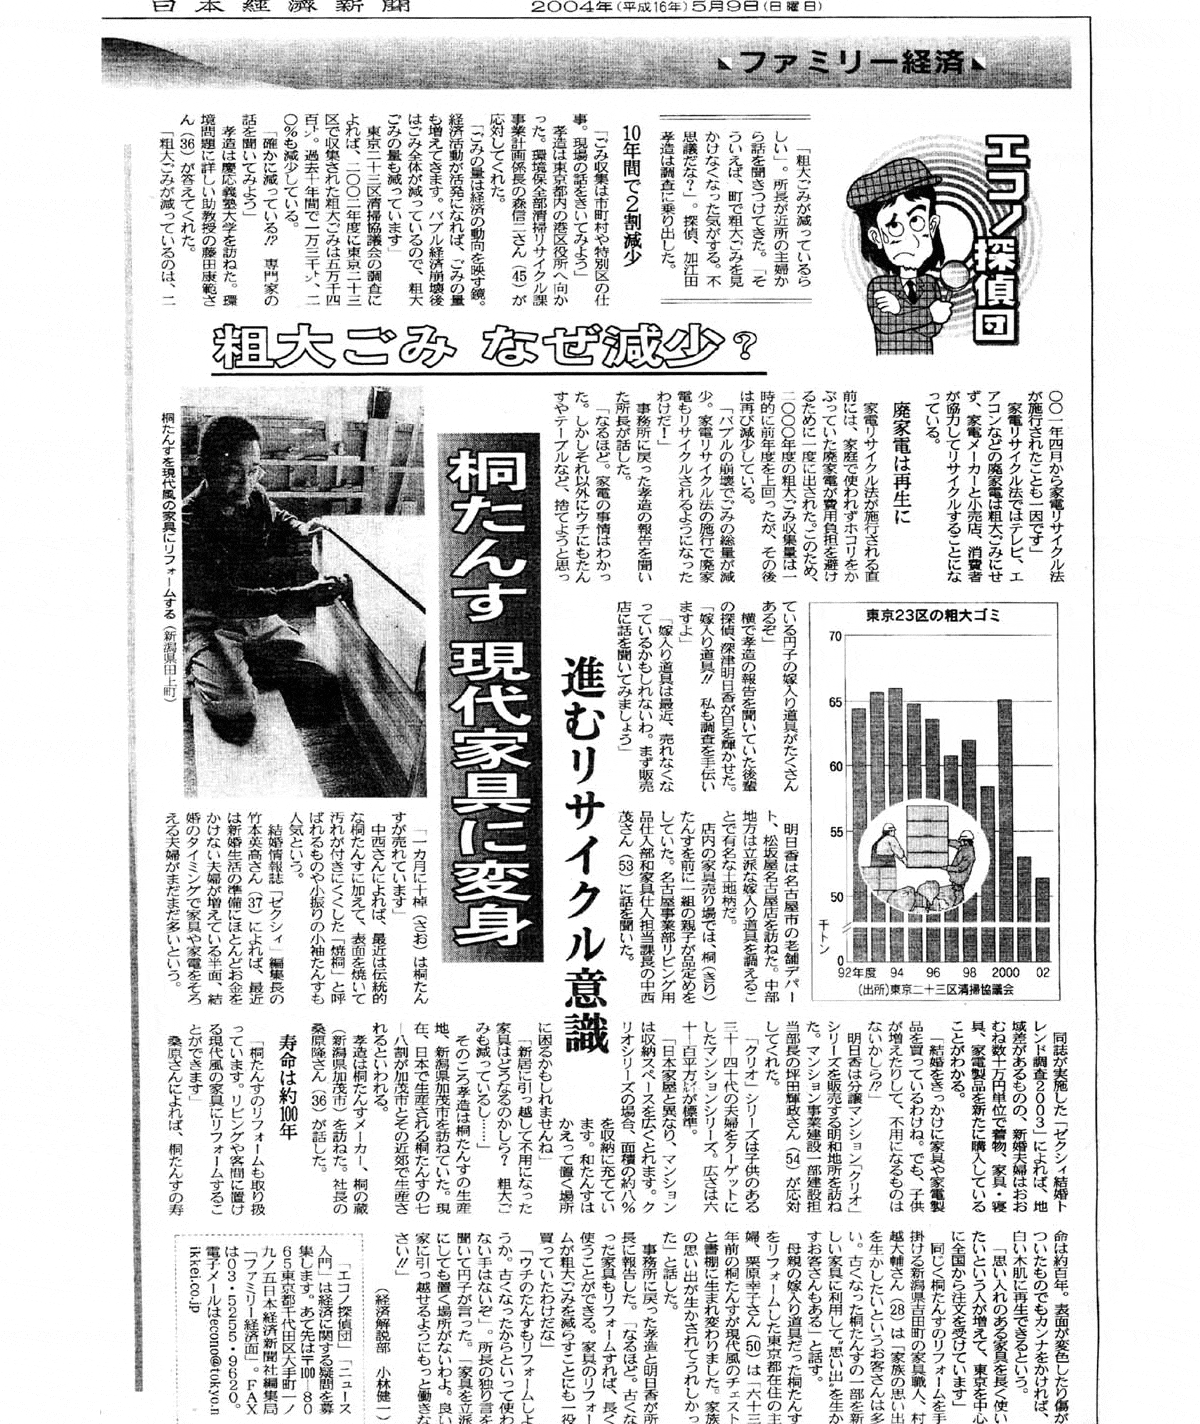 2004年5月9日 日本経済新聞取材